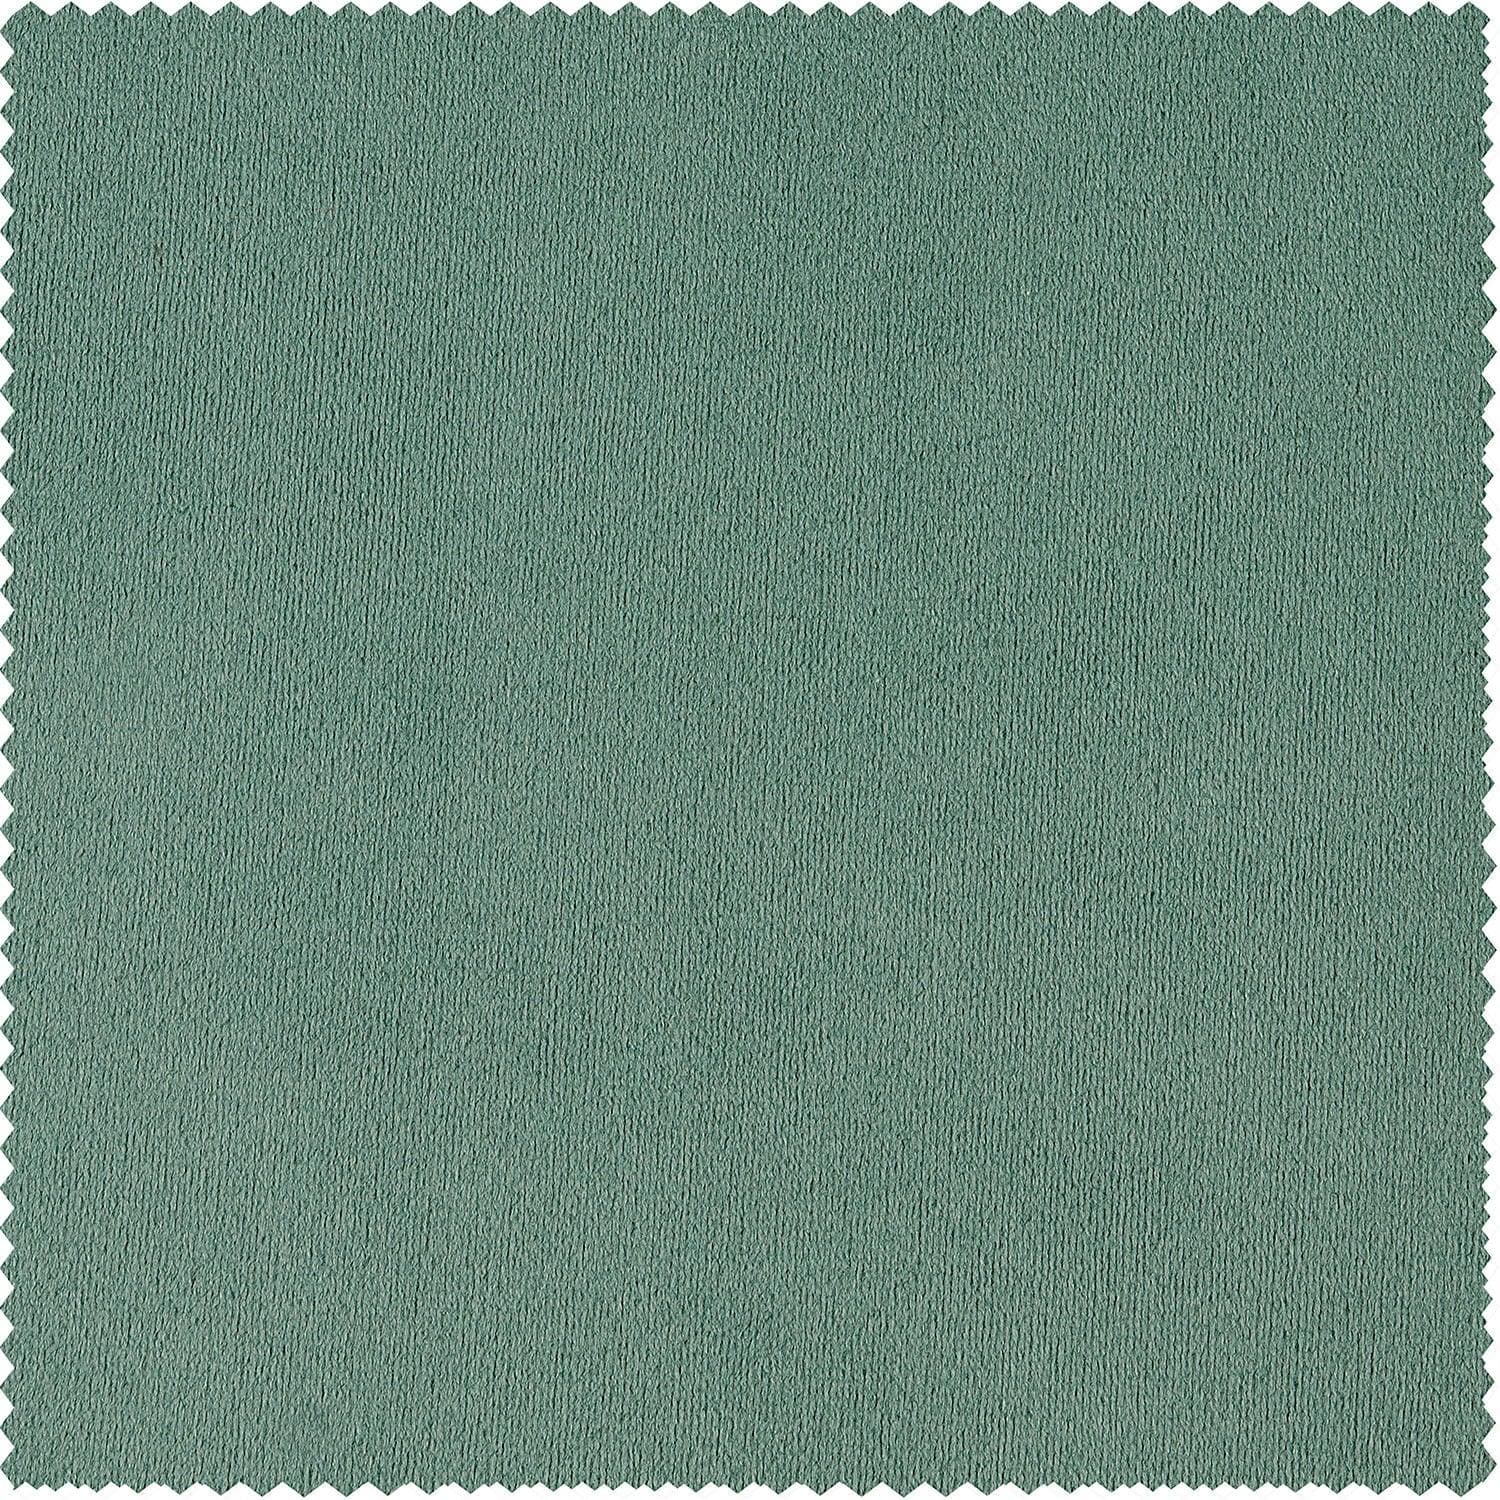 Aqua Mist Signature Velvet Cushion Covers - Pair